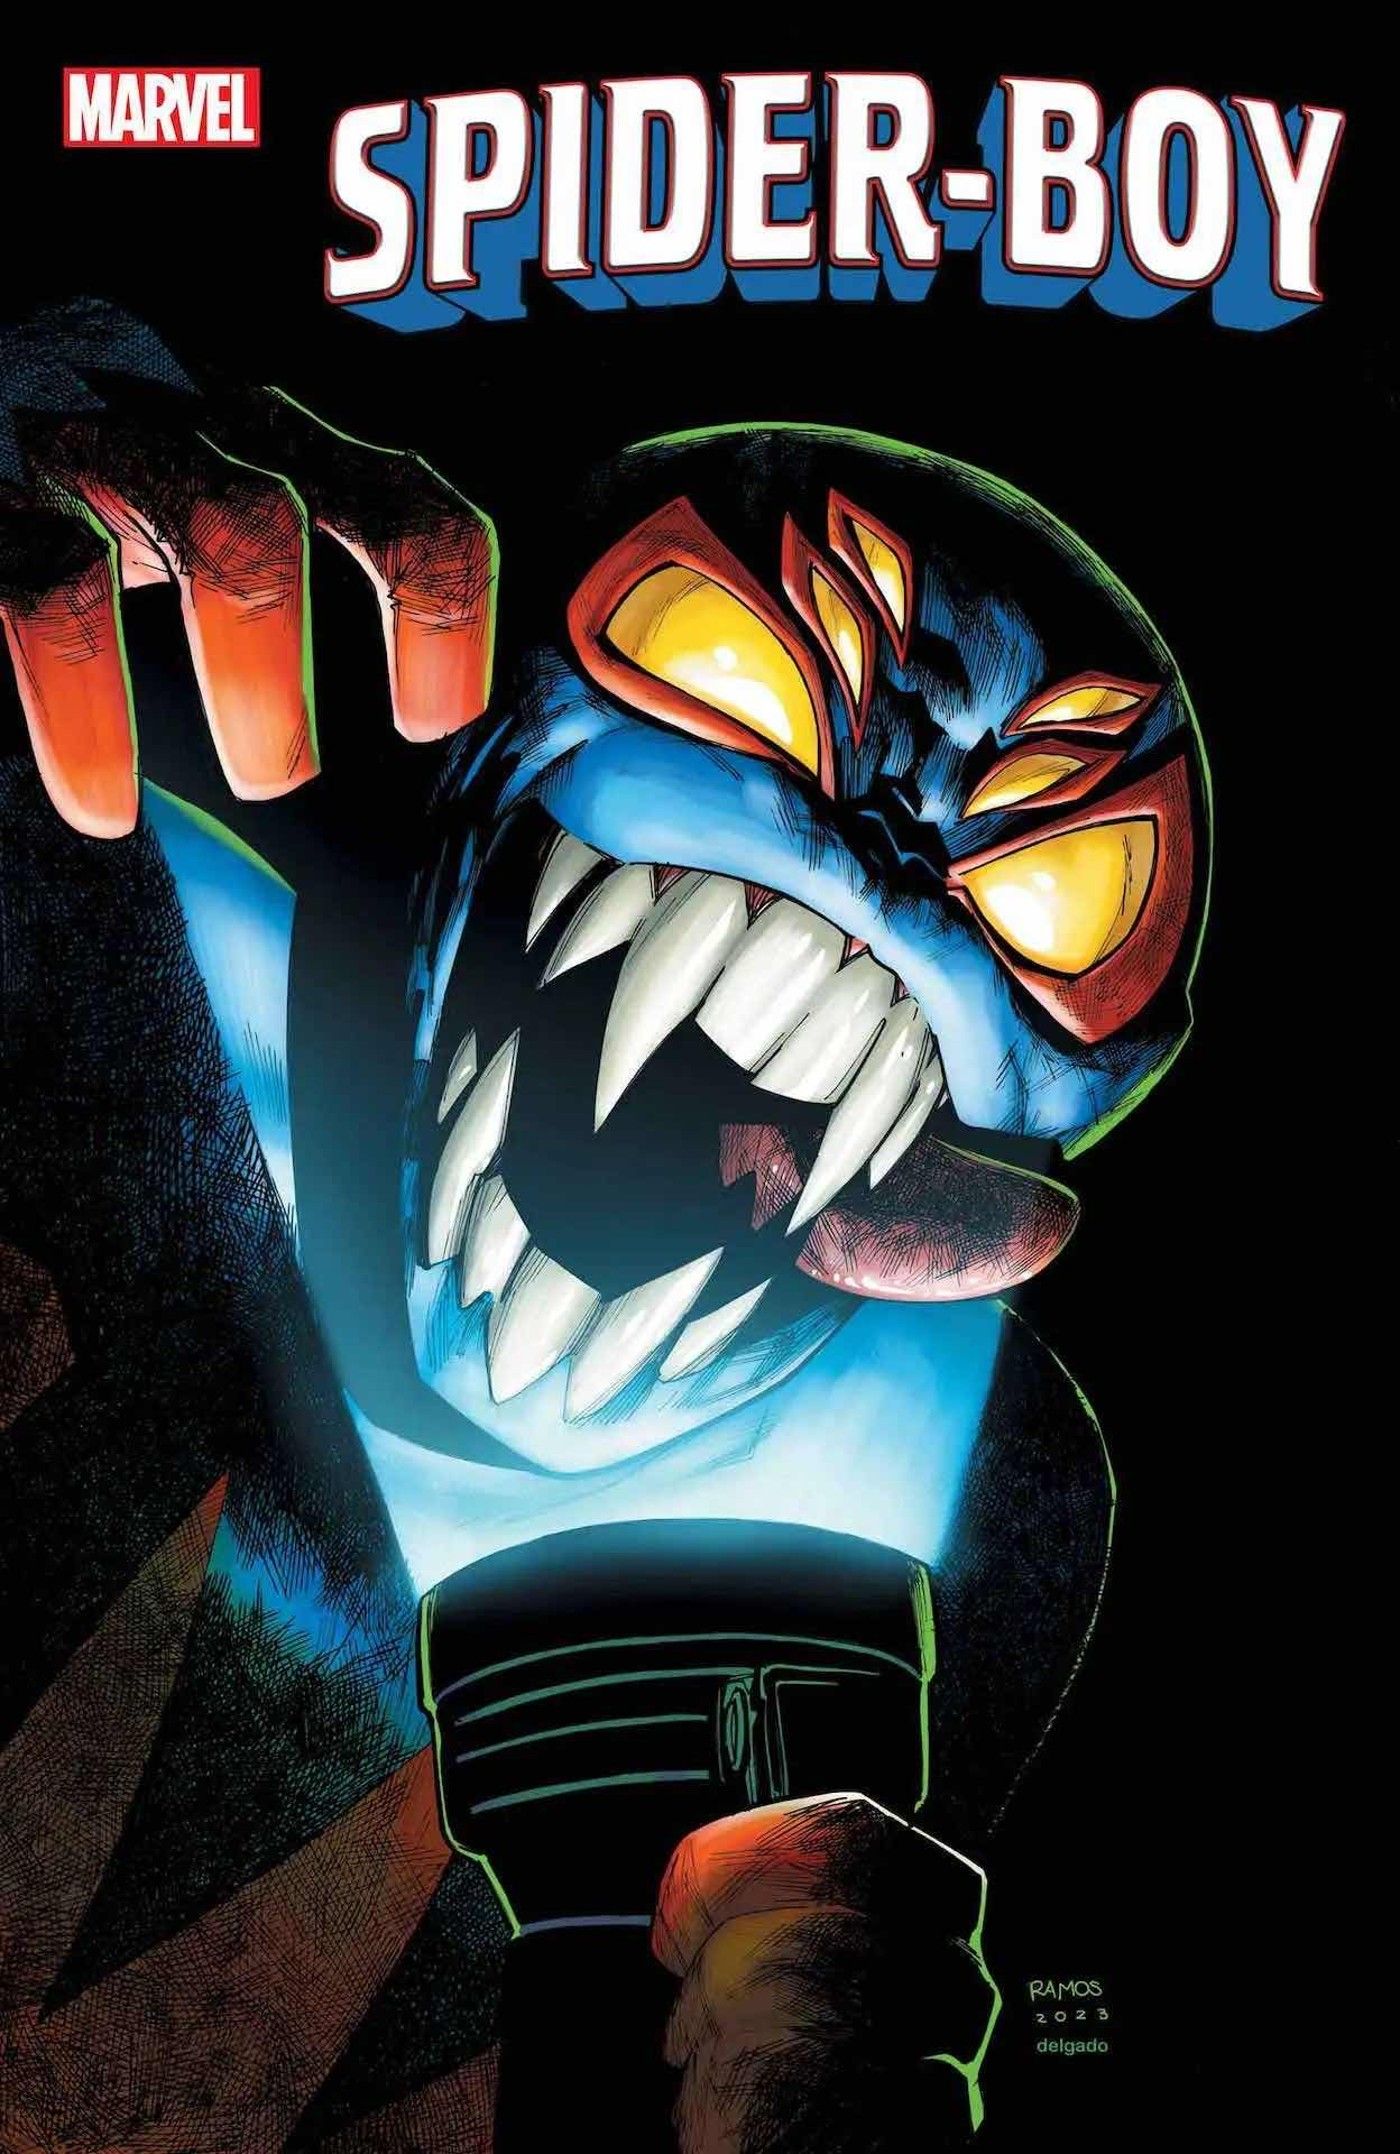 Spider-Man’s Sidekick Spider-Boy Goes Full Horror In Terrifying New Cover Art